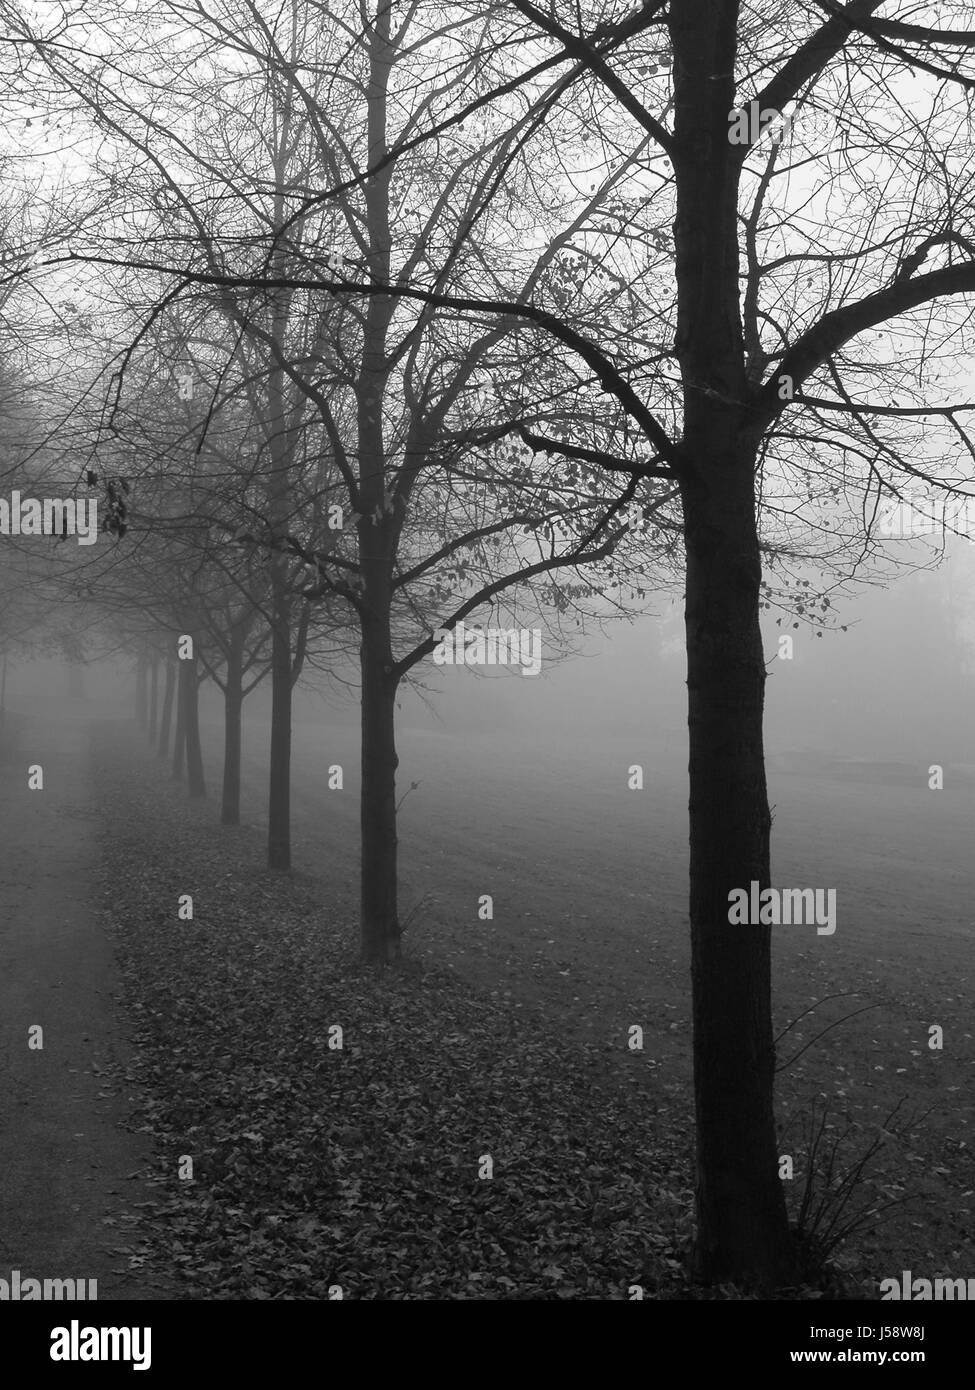 Arbre arbres park avenue brouillard une rangée d'arbres nature paysage paysages nebelwand Banque D'Images